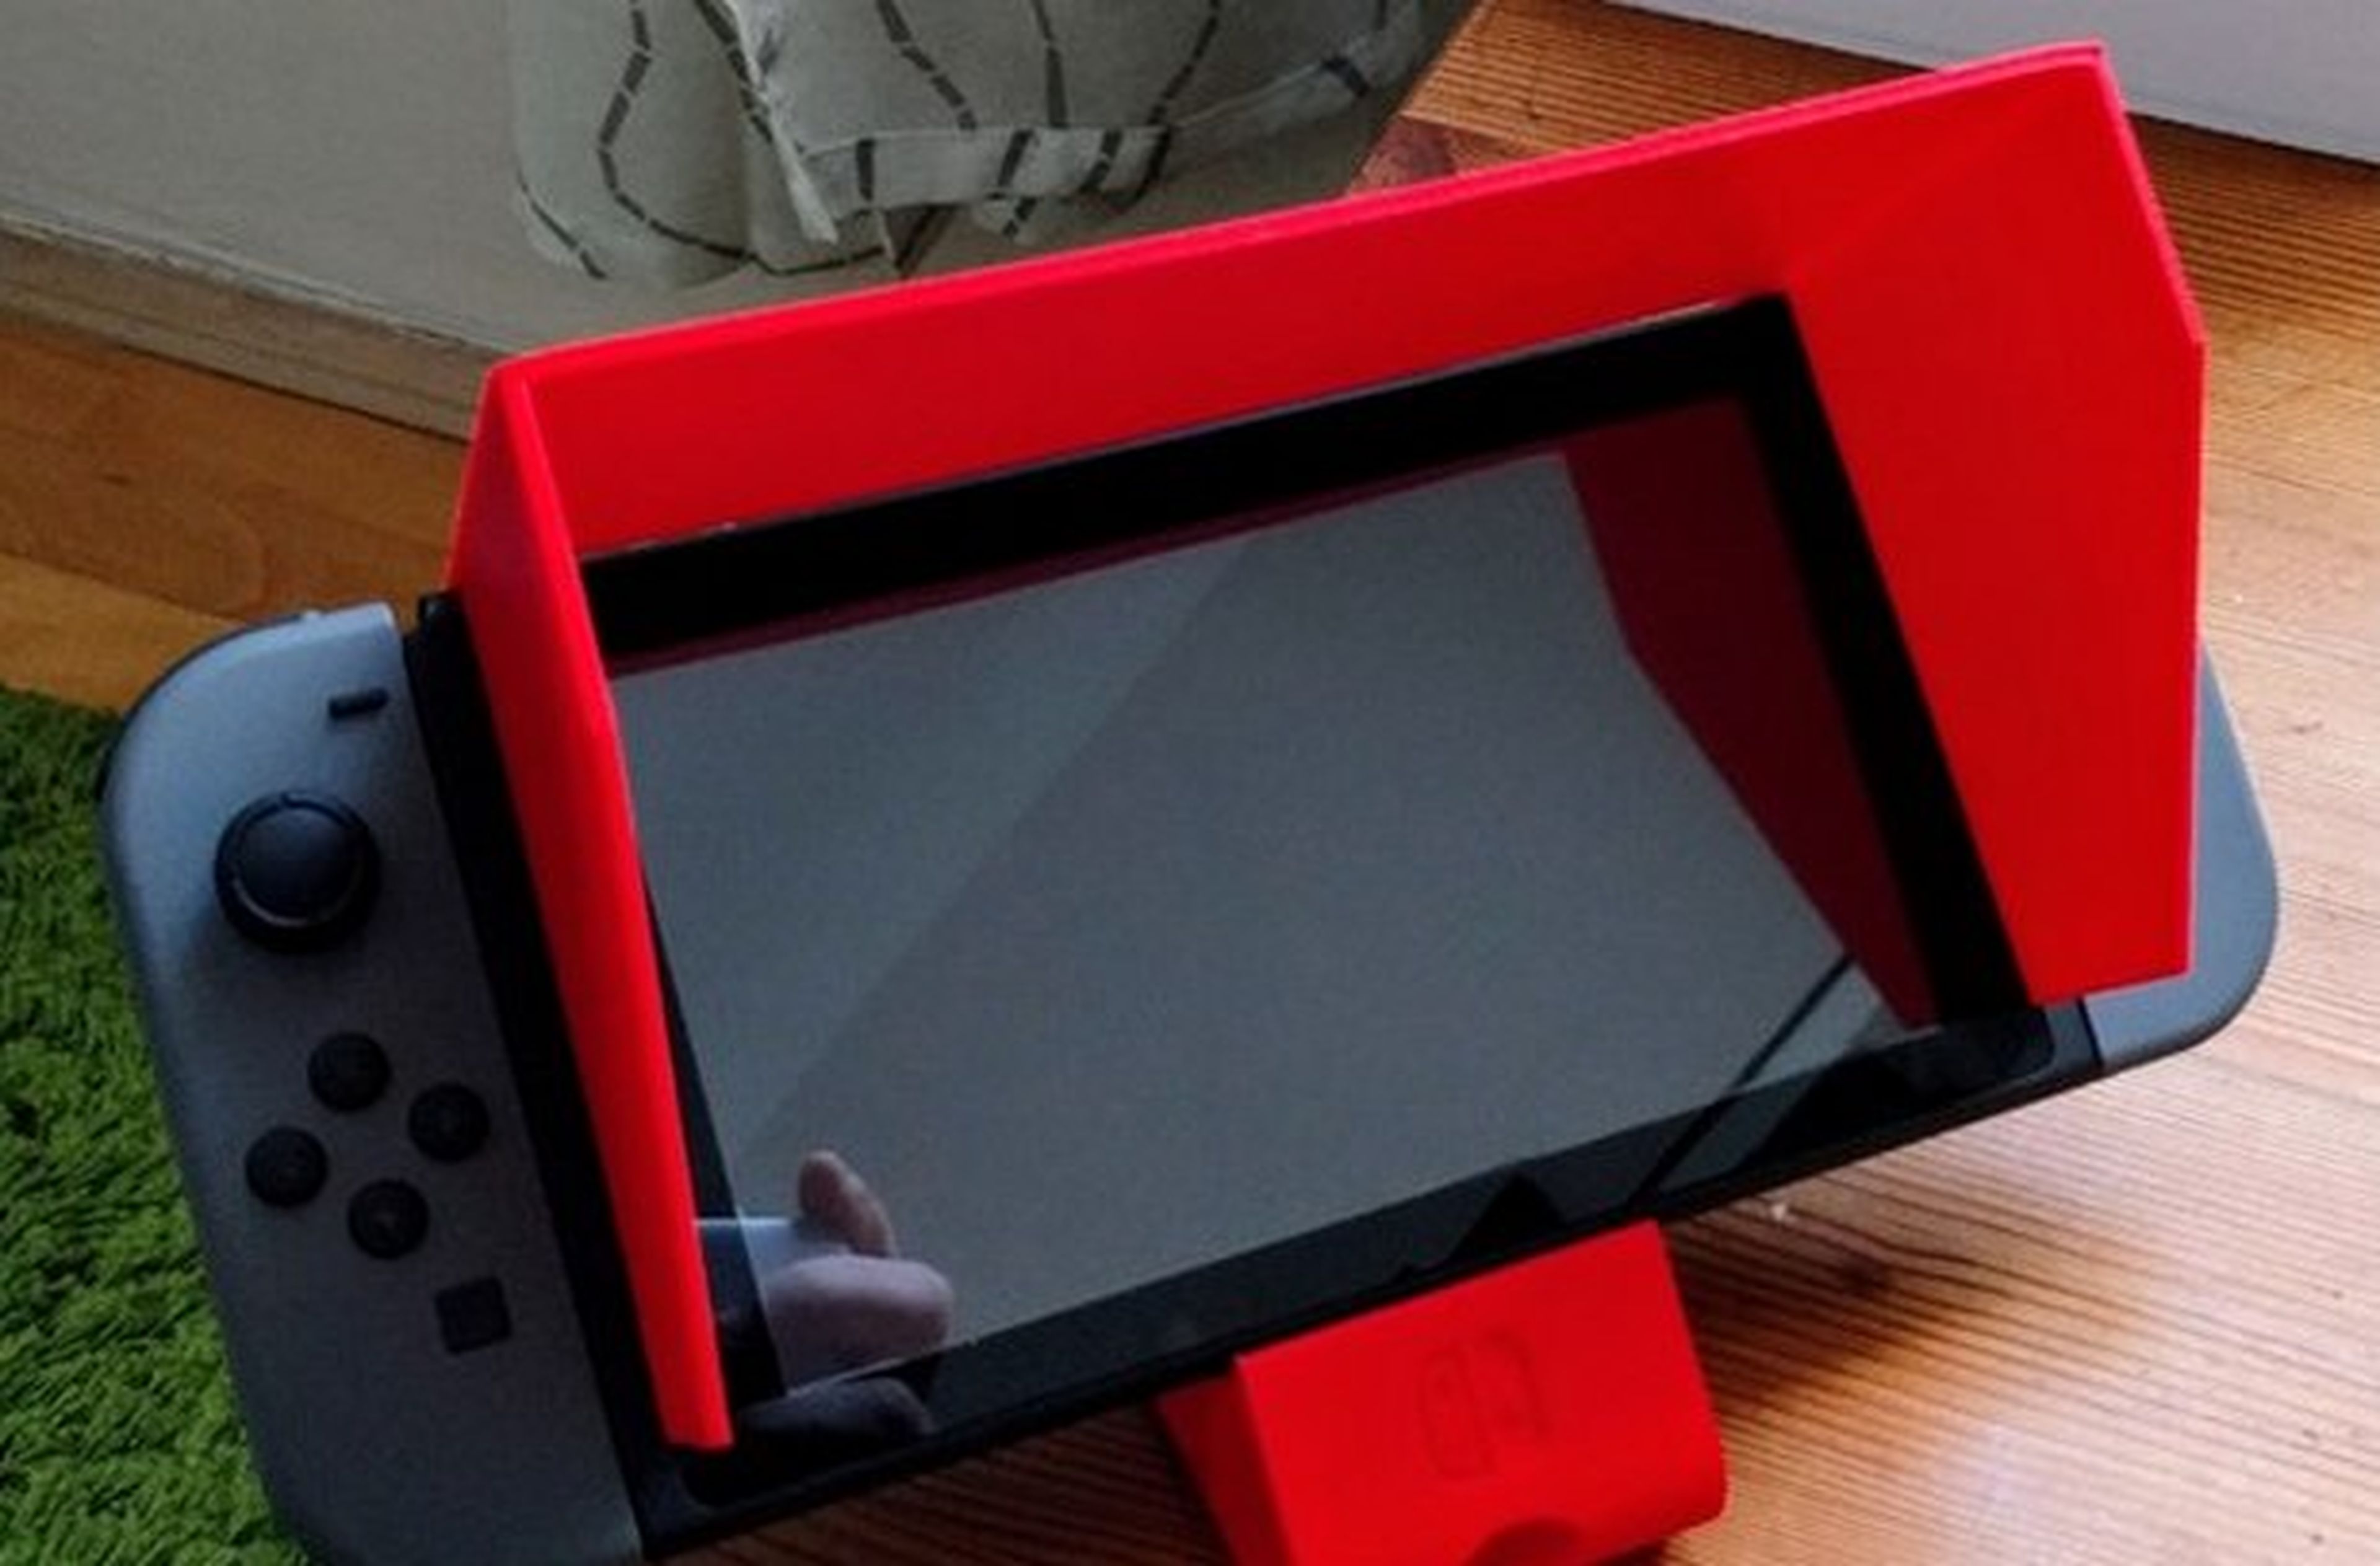 Nintendo Switch Hechos Con Impresora